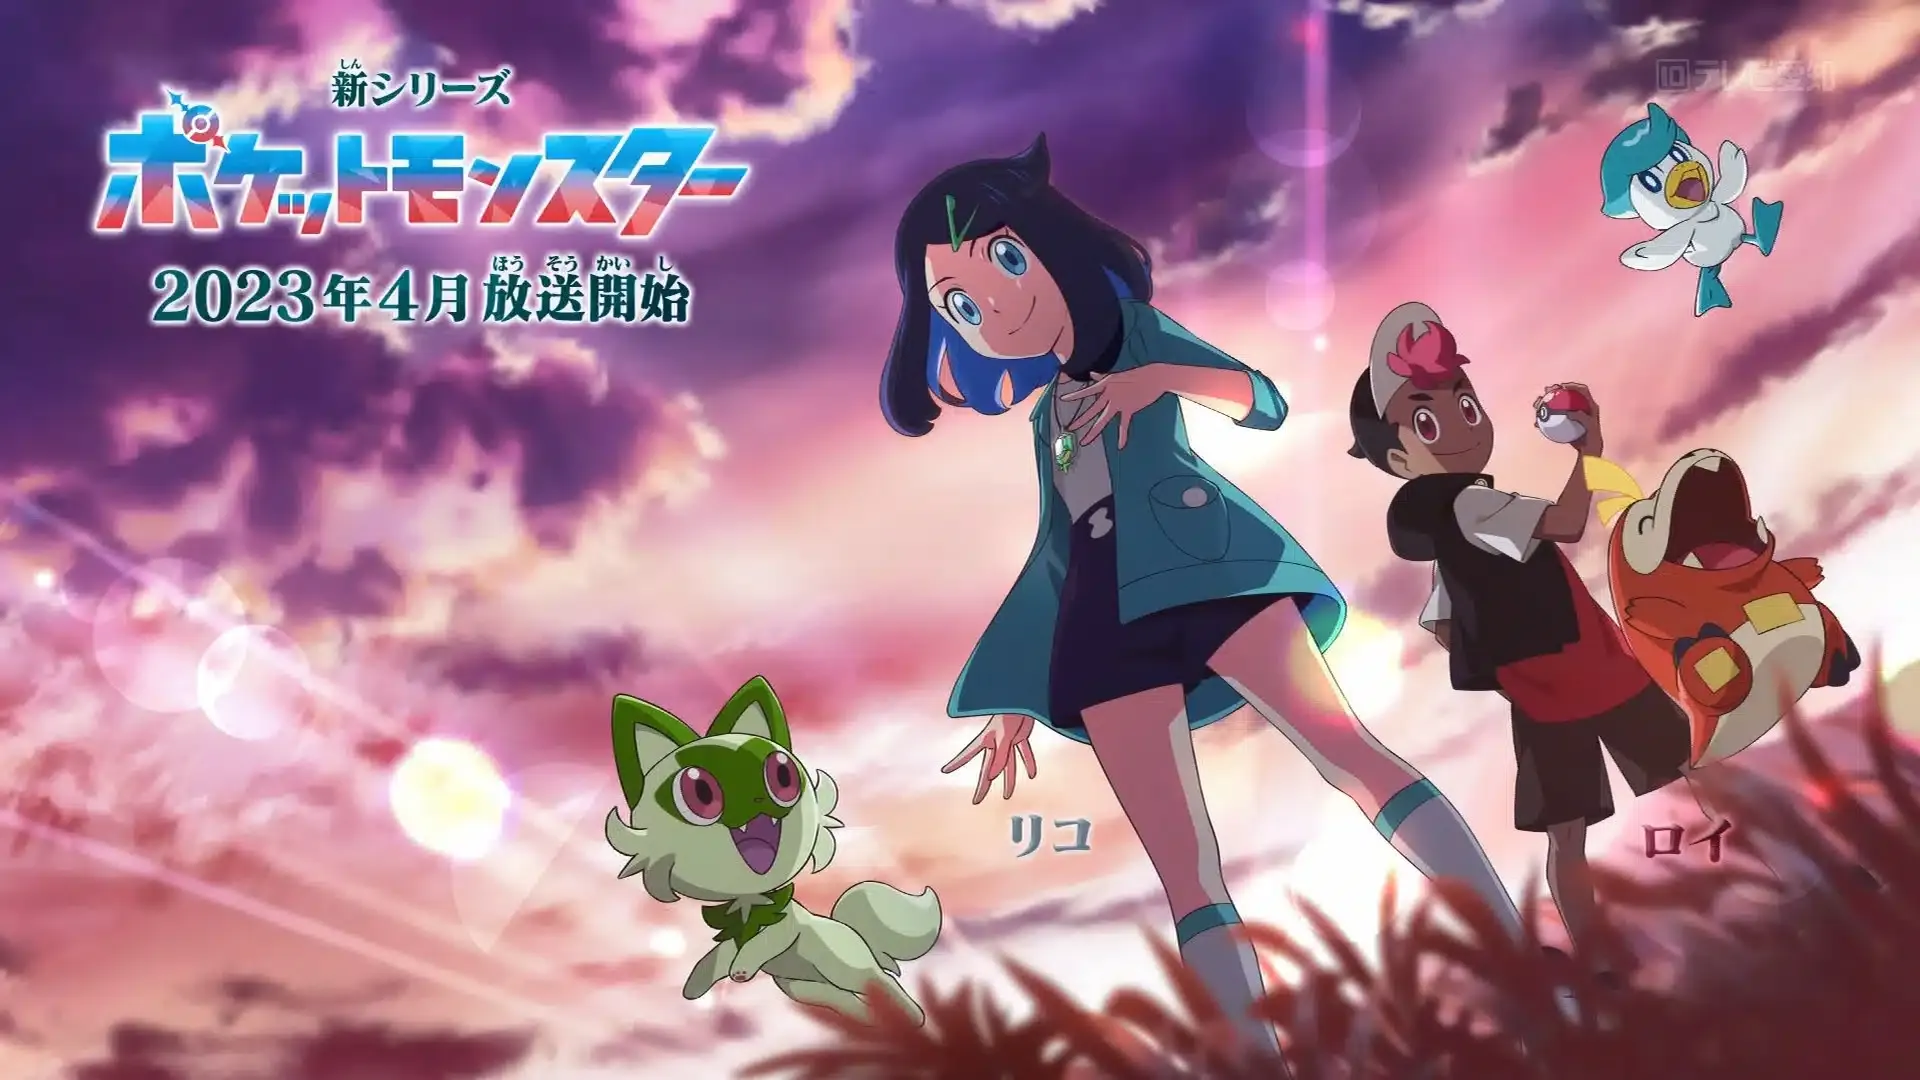 Nova protagonista de Pokémon pode ser a filha de Ash Ketchum